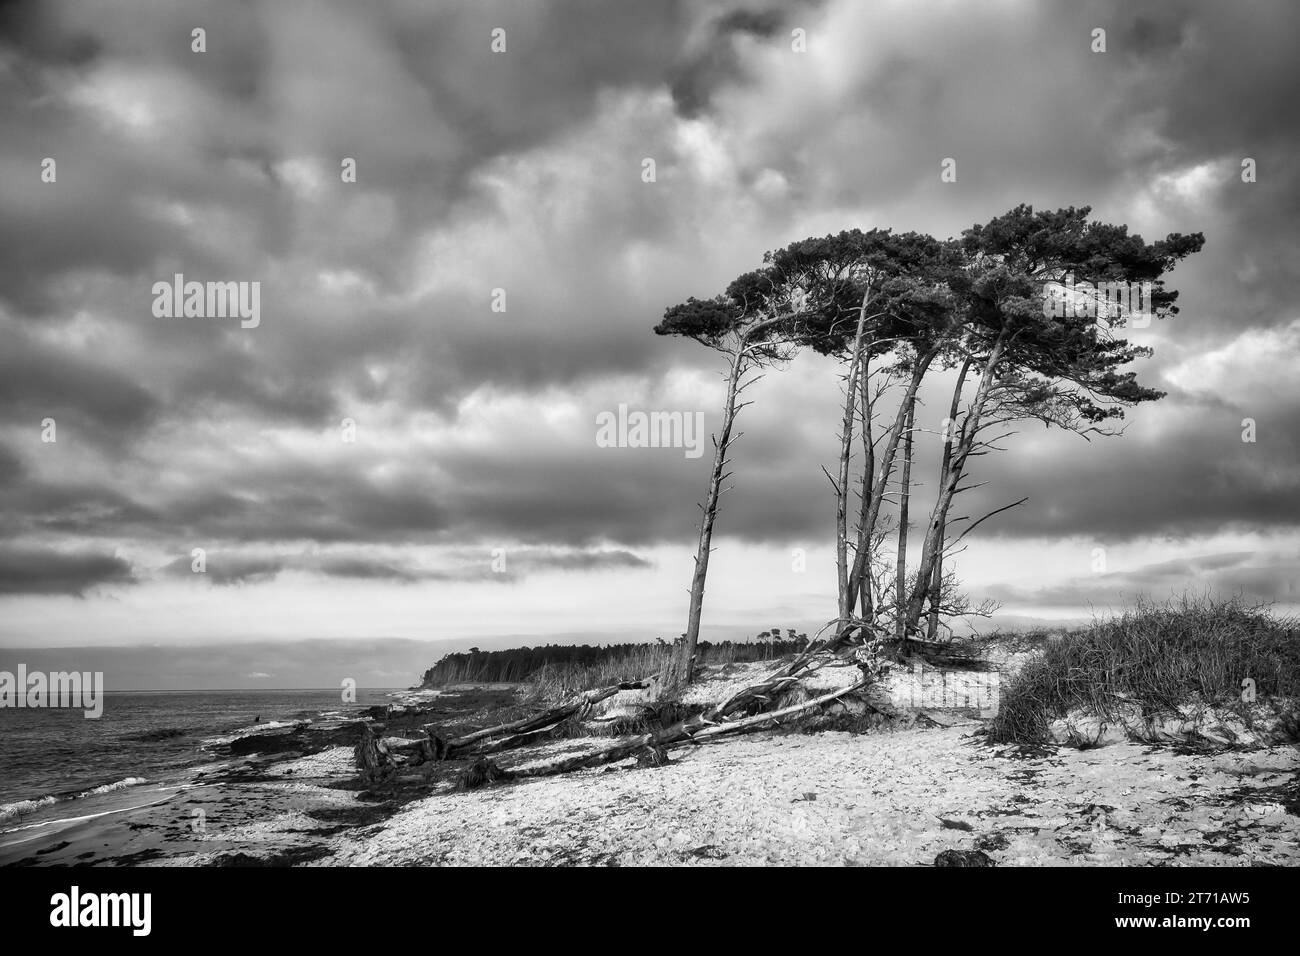 Weststrand an der Ostsee in schwarz-weiß. Vom Wind aus ziehen sich die Kiefern am Strand durch die Dünen. Blick auf das Meer. Landschaftsfot Stockfoto